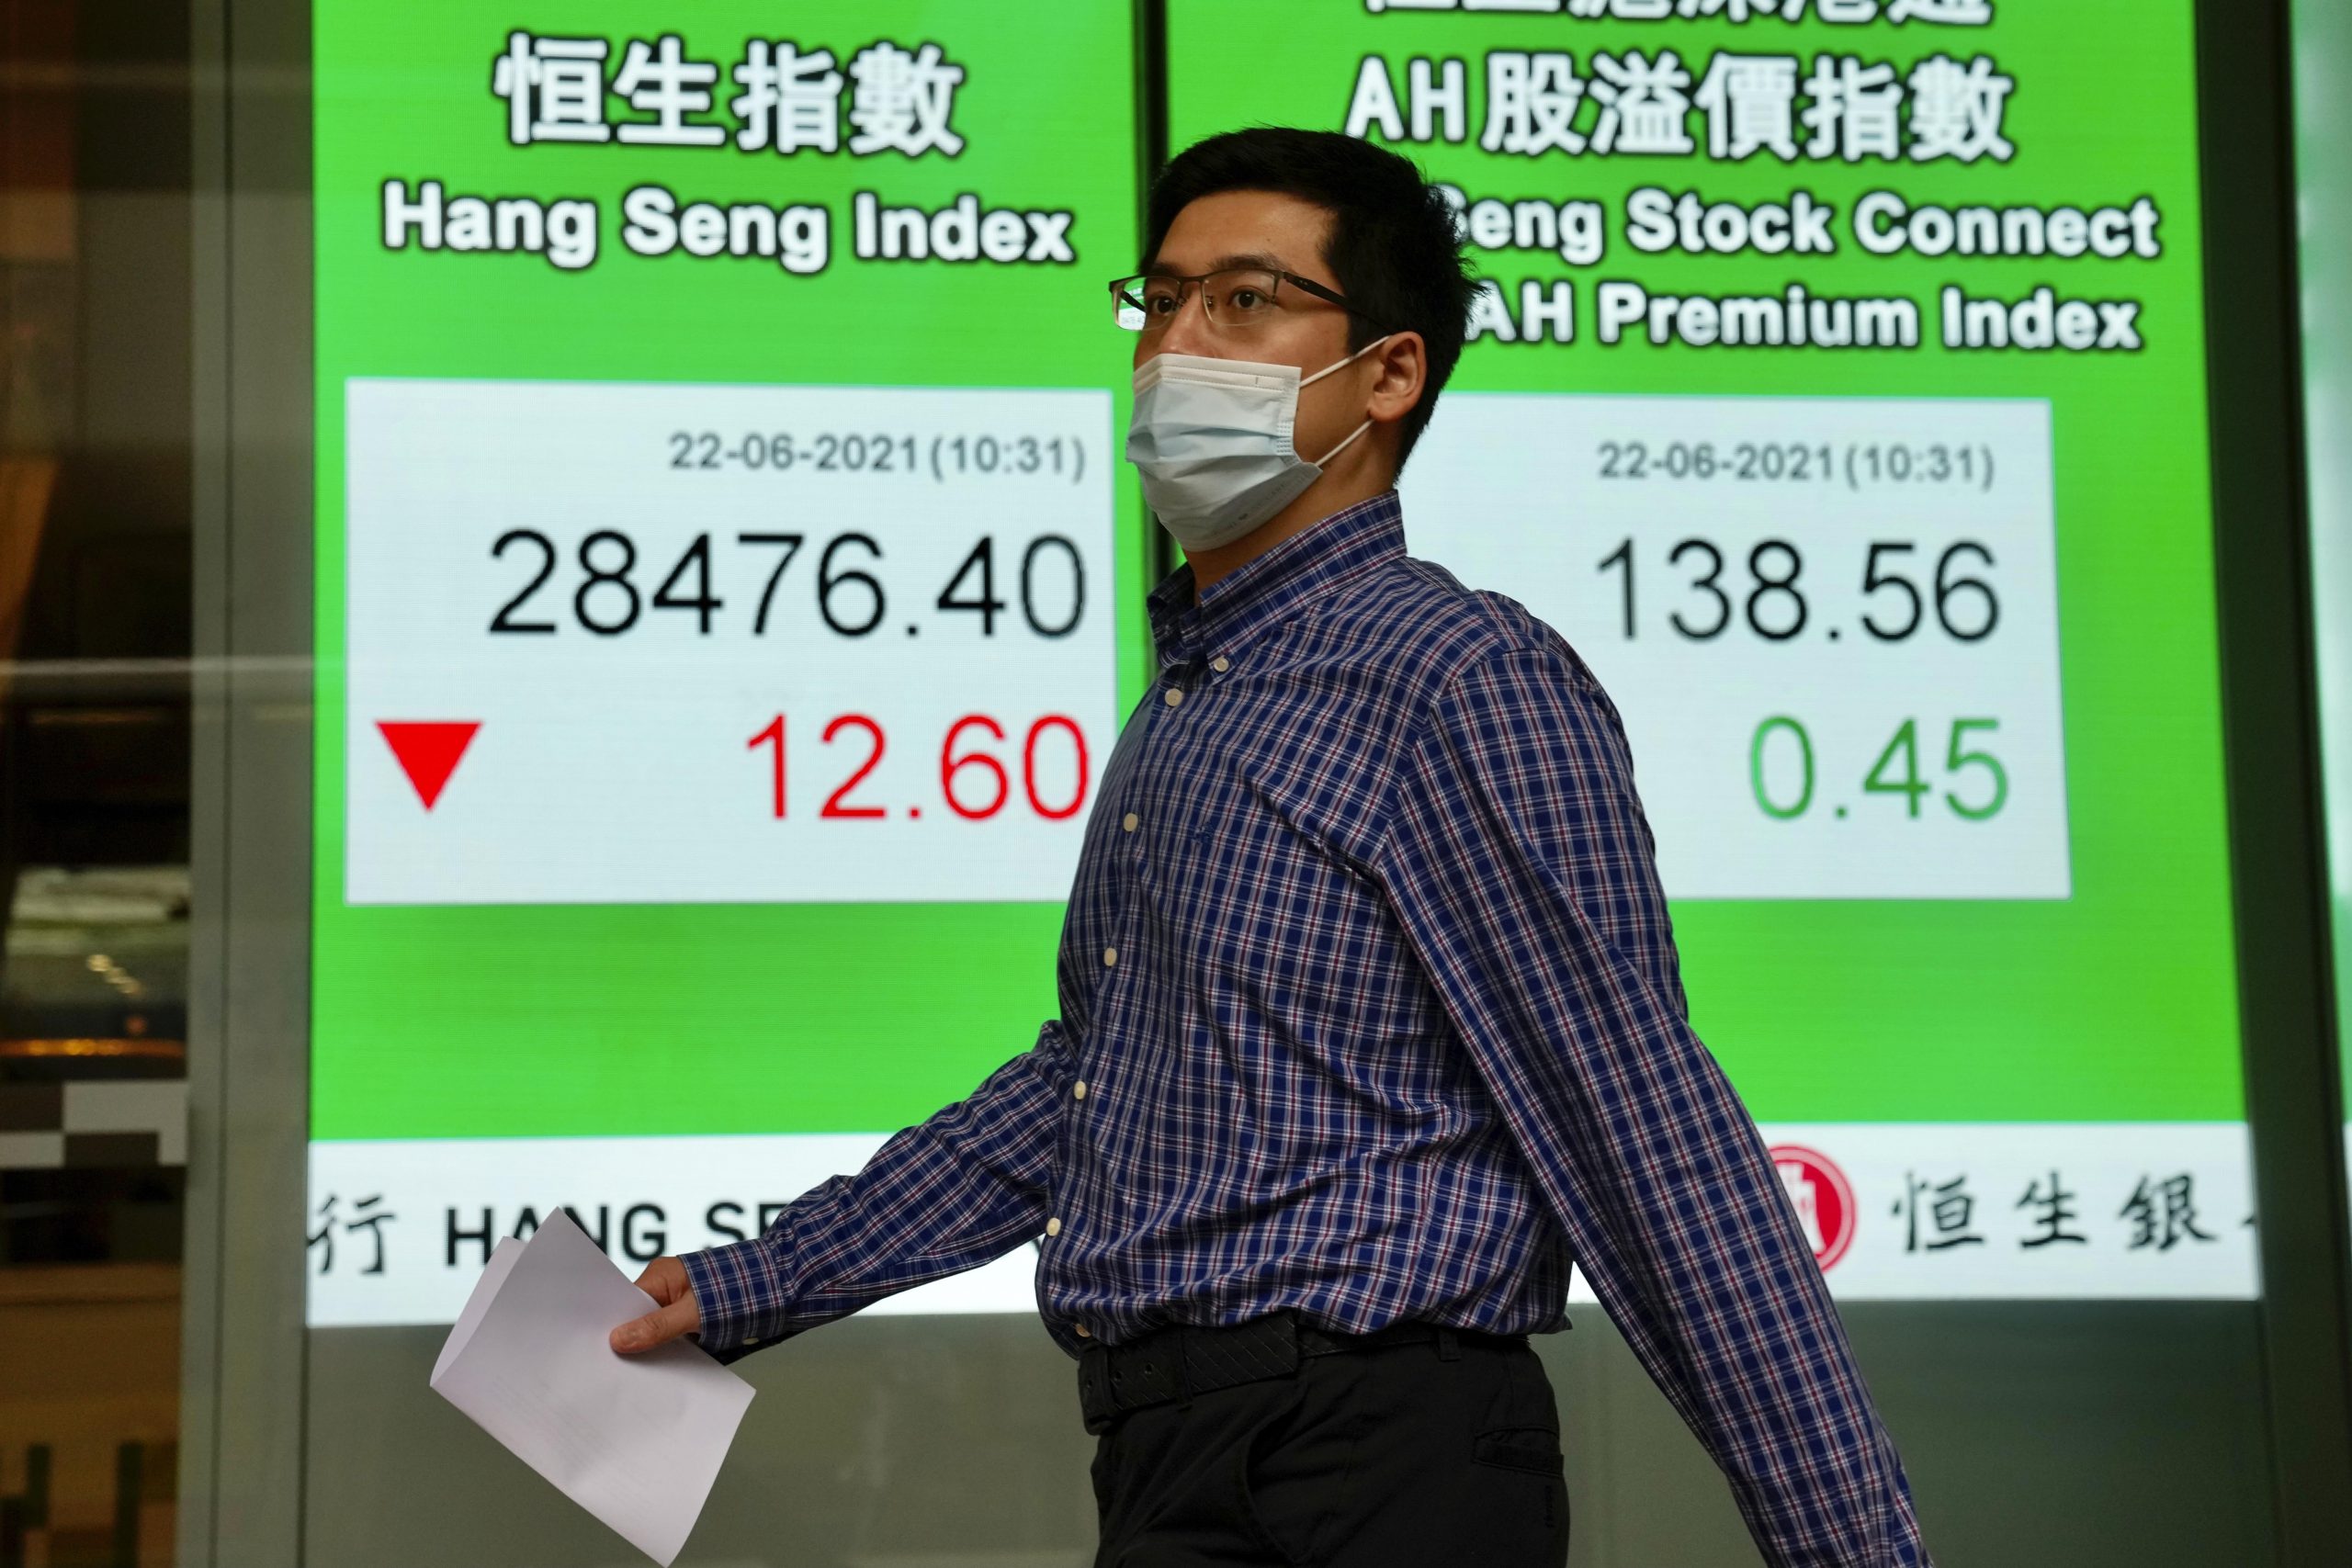 Amid China clampdown, US warns businesses of risks operating in Hong Kong